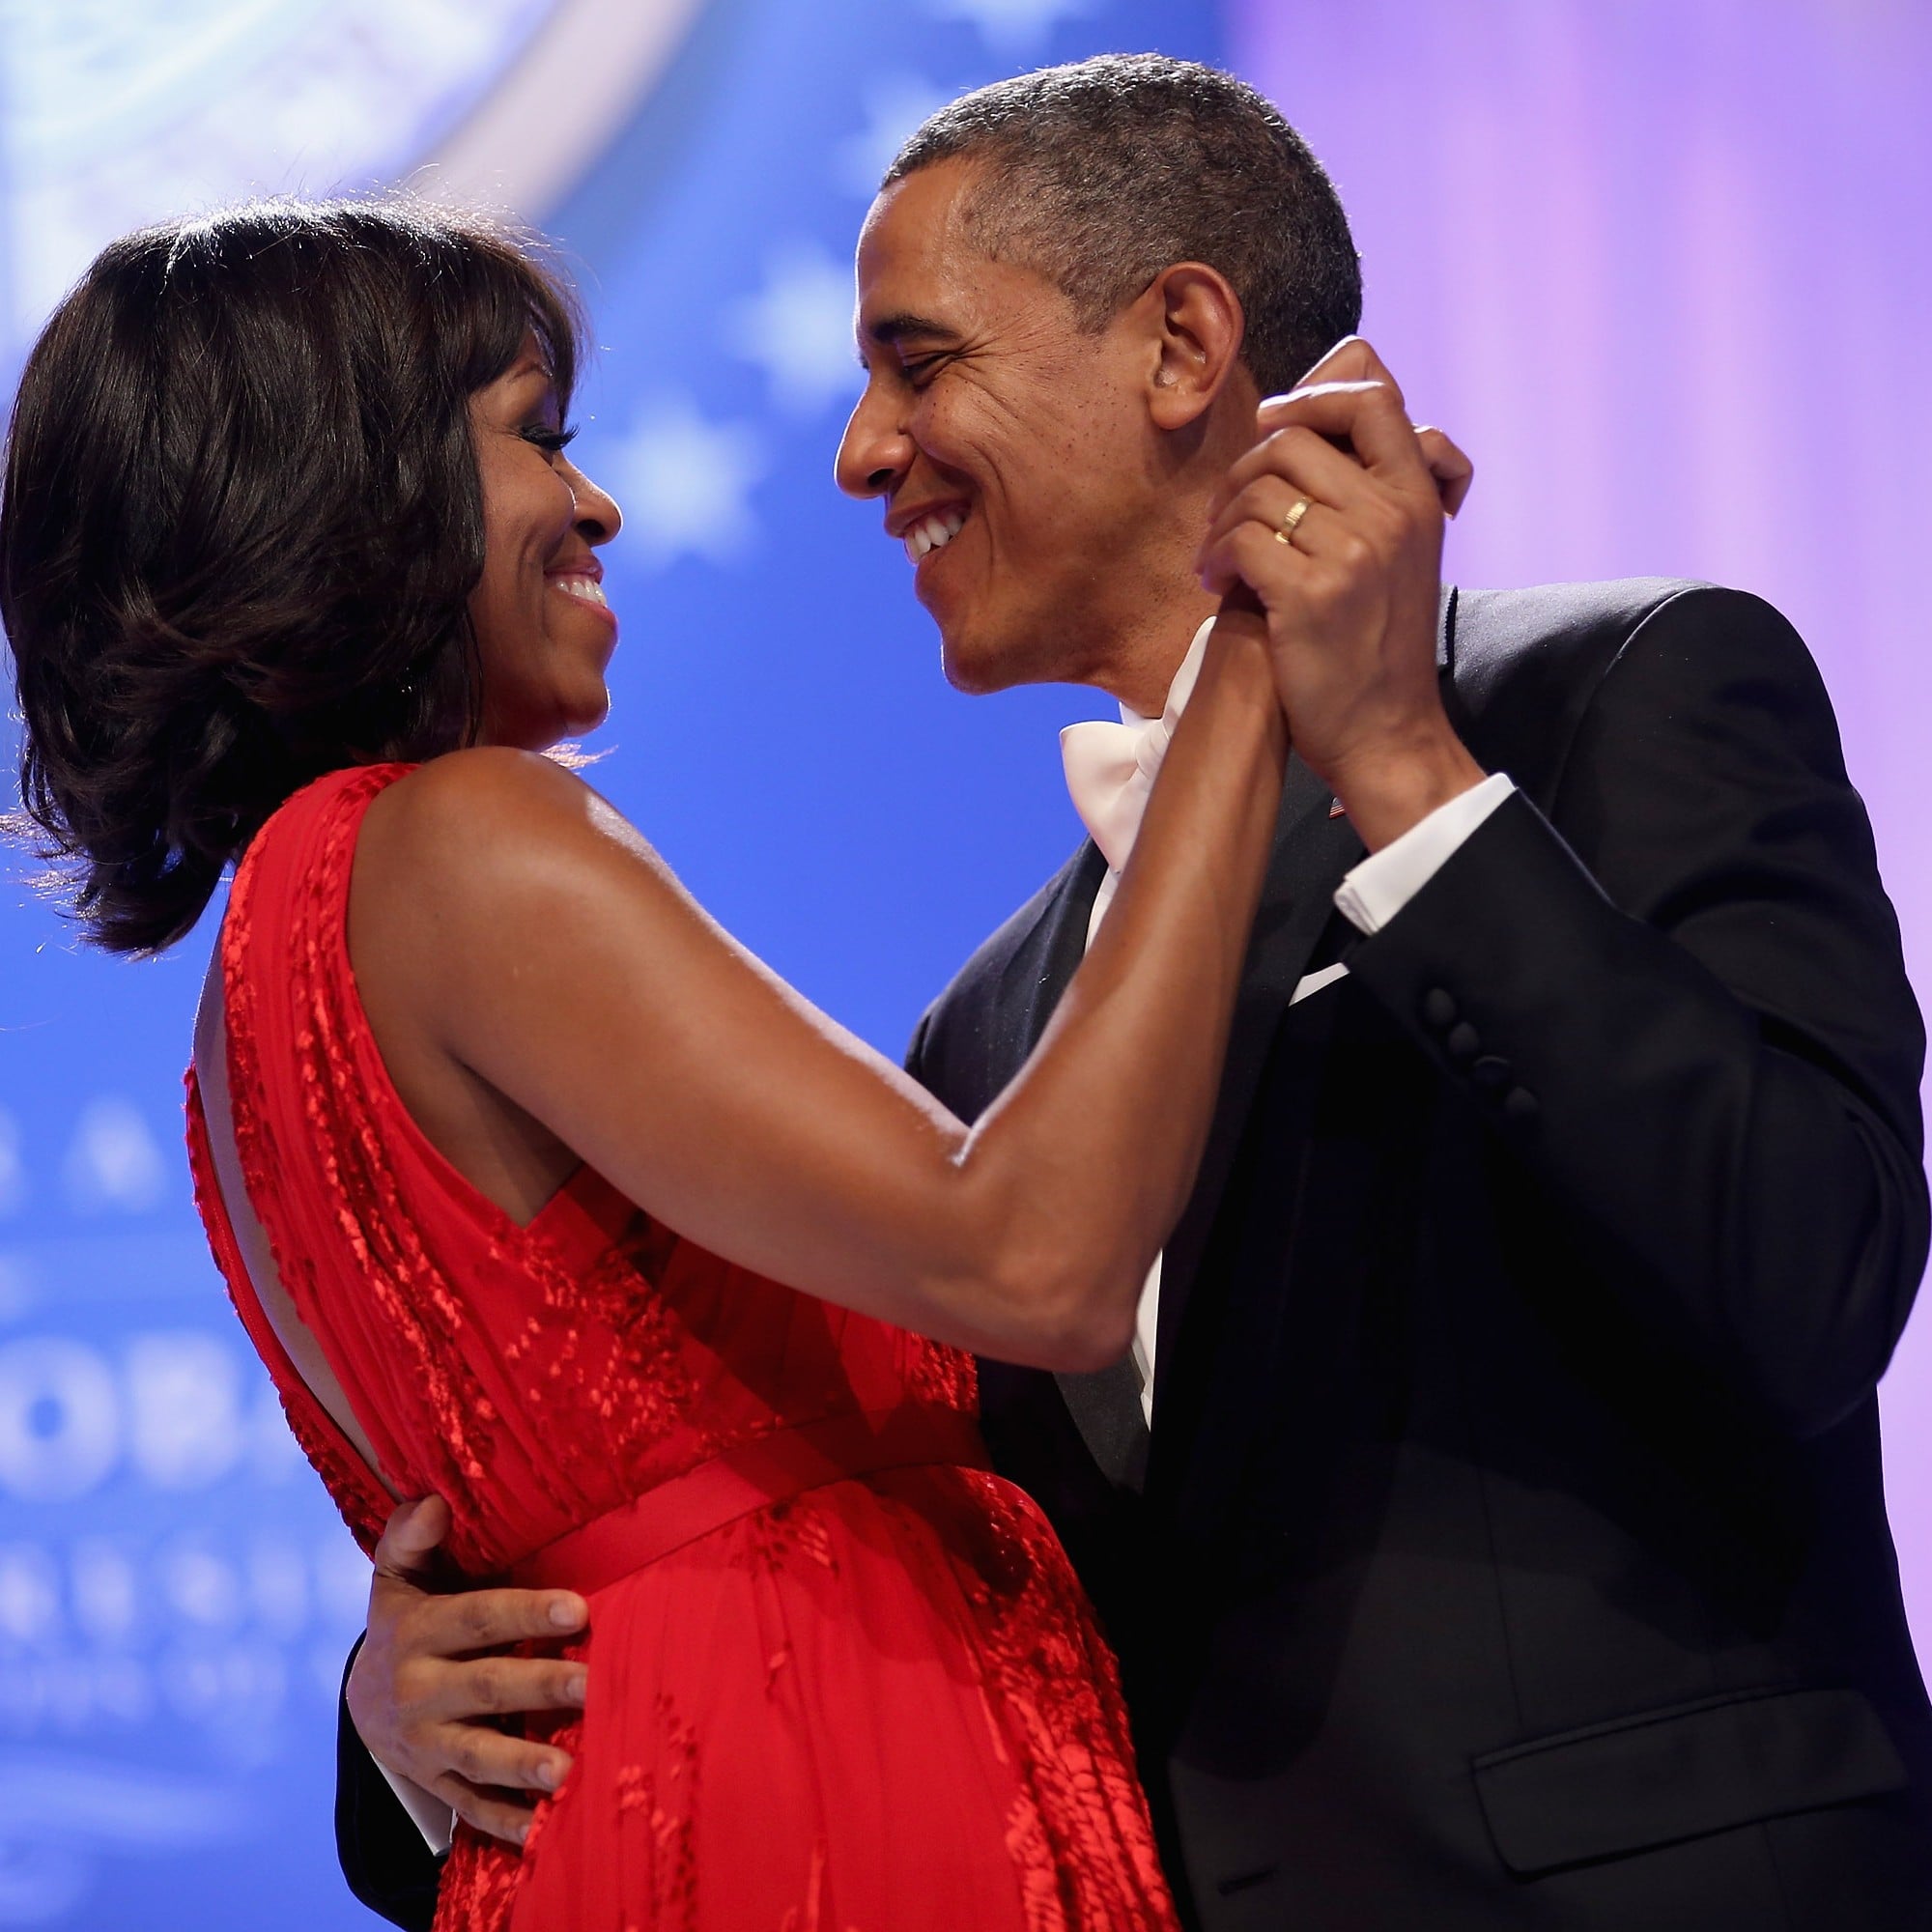 Barack and Michelle Obama Valentine's Day Messages 2019 | POPSUGAR Celebrity